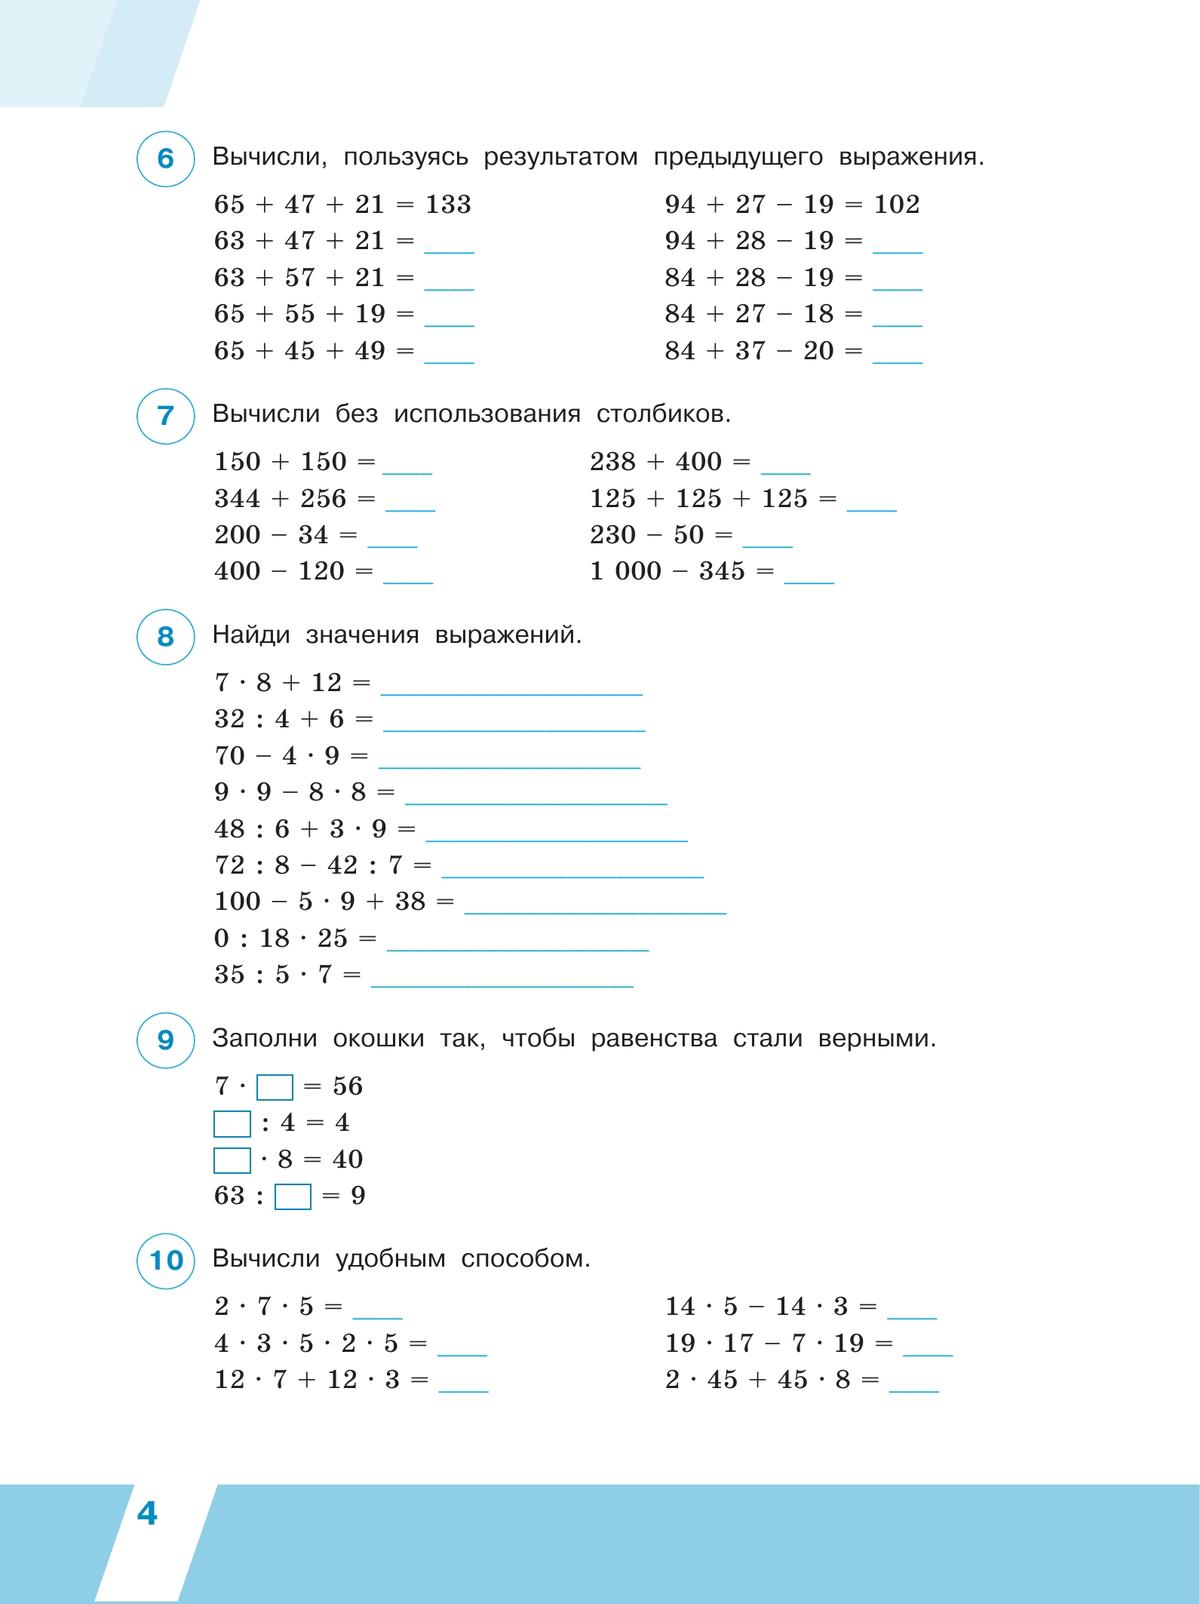 Всероссийские проверочные работы. Математика. Рабочая тетрадь. 4 класс. В 2 частях. Часть 1 2